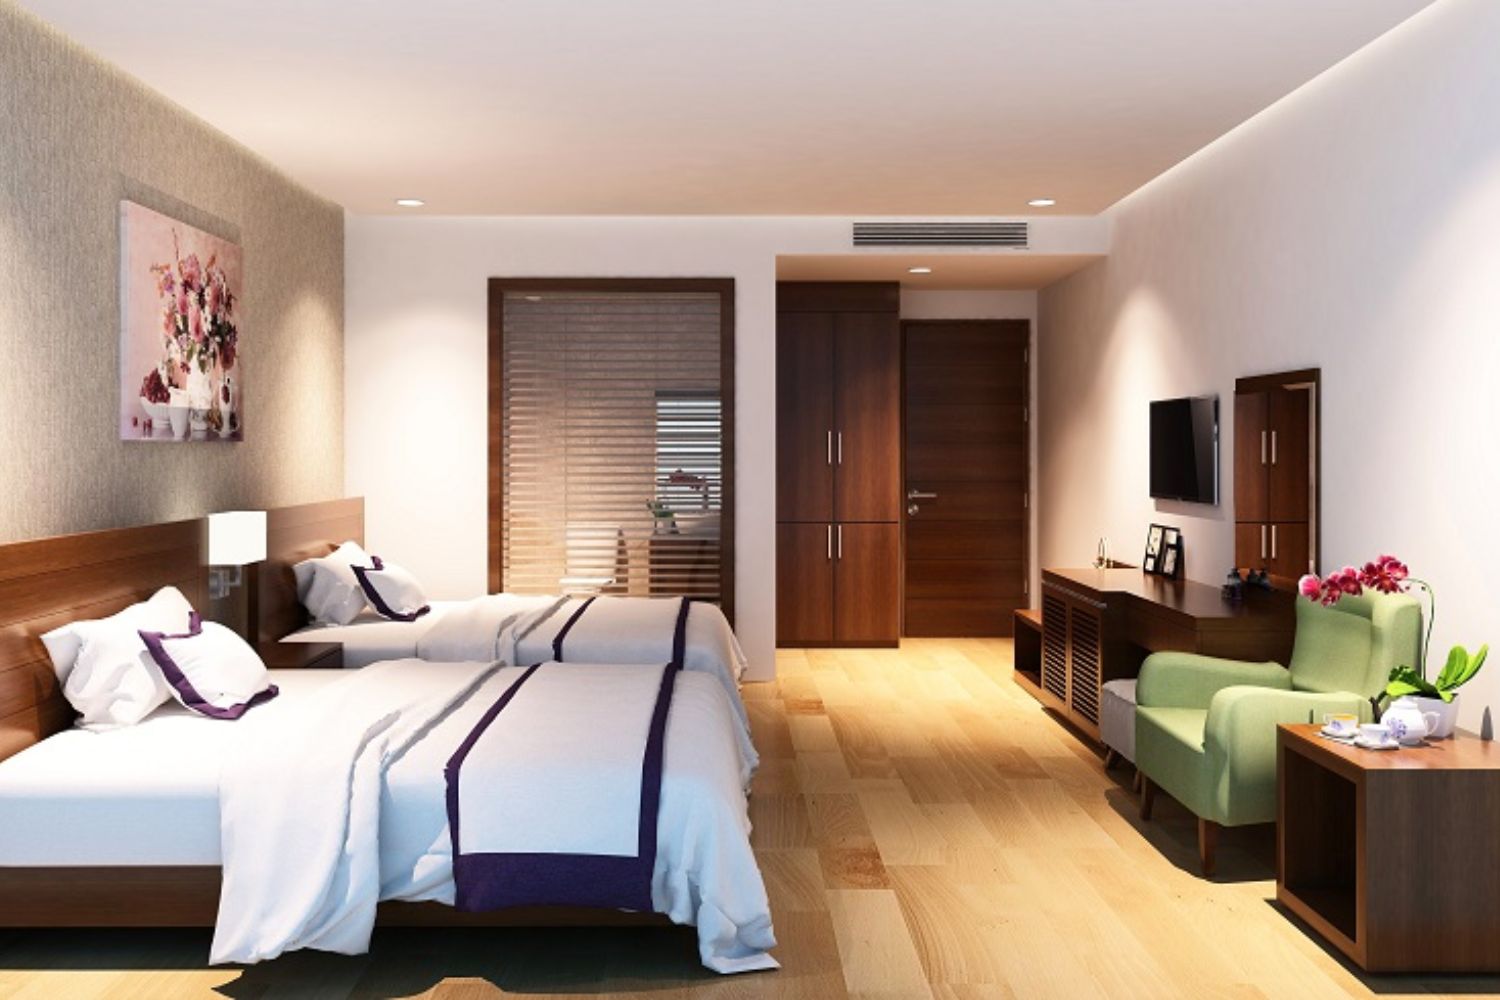 Đến Aria Hotel tận hưởng đẳng cấp khách sạn 4 sao bậc nhất tại Đà Nẵng 11